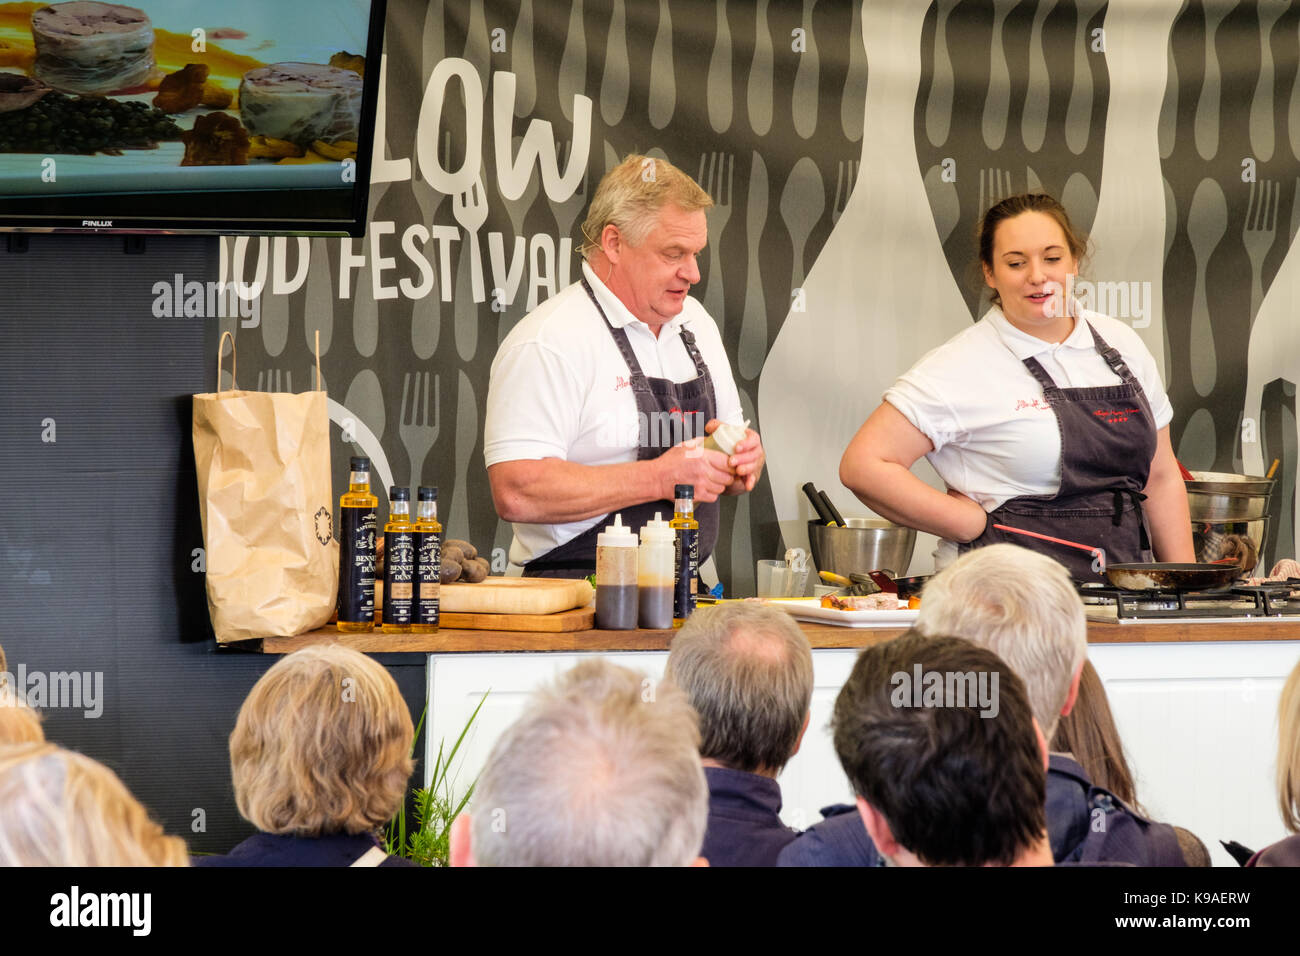 Démonstration culinaire par les chefs de l'Albrighton Hussey, au Ludlow Food Festival 2017, Ludlow Castle, Ludlow, Shropshire, Angleterre Banque D'Images